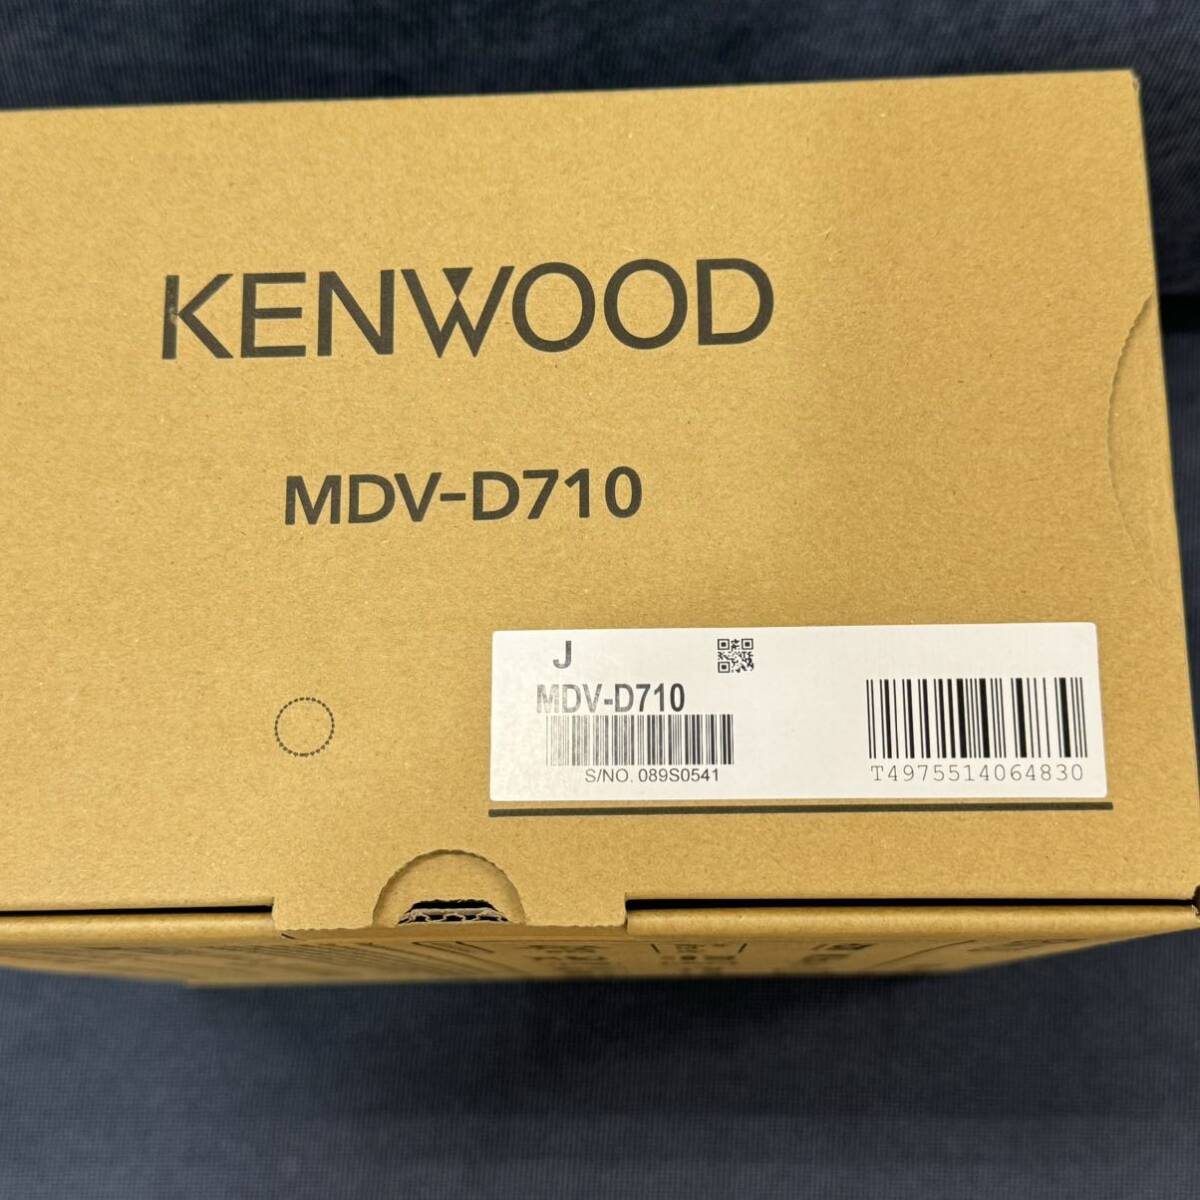 KENWOOD Kenwood MVD-D710 17835 unused S/NO 089S0541